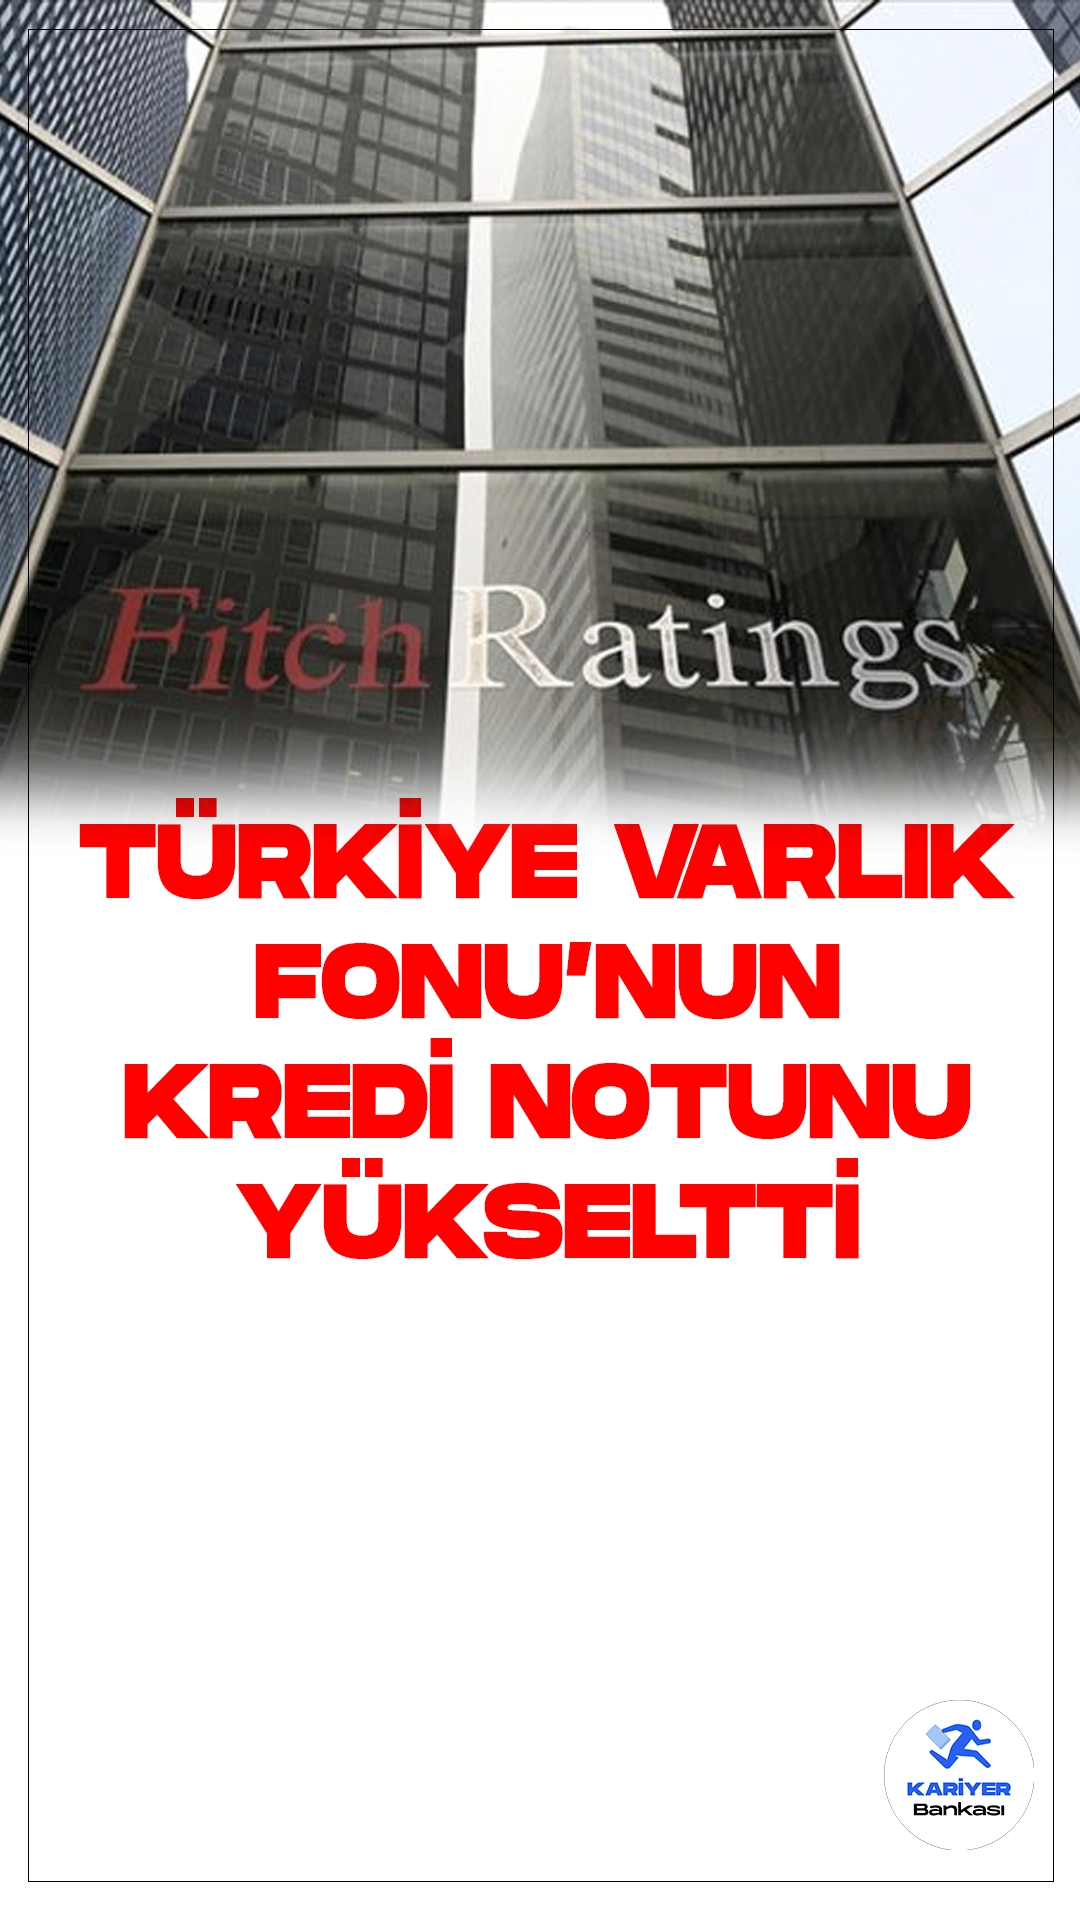 Fitch, Türkiye Varlık Fonu'nun Kredi Notunu Yükseltti.Uluslararası kredi derecelendirme kuruluşu Fitch, Türkiye Varlık Fonu'nun (TVF) kredi notunu "B"den "B+"ya yükseltirken, not görünümünü “pozitif” olarak belirledi.